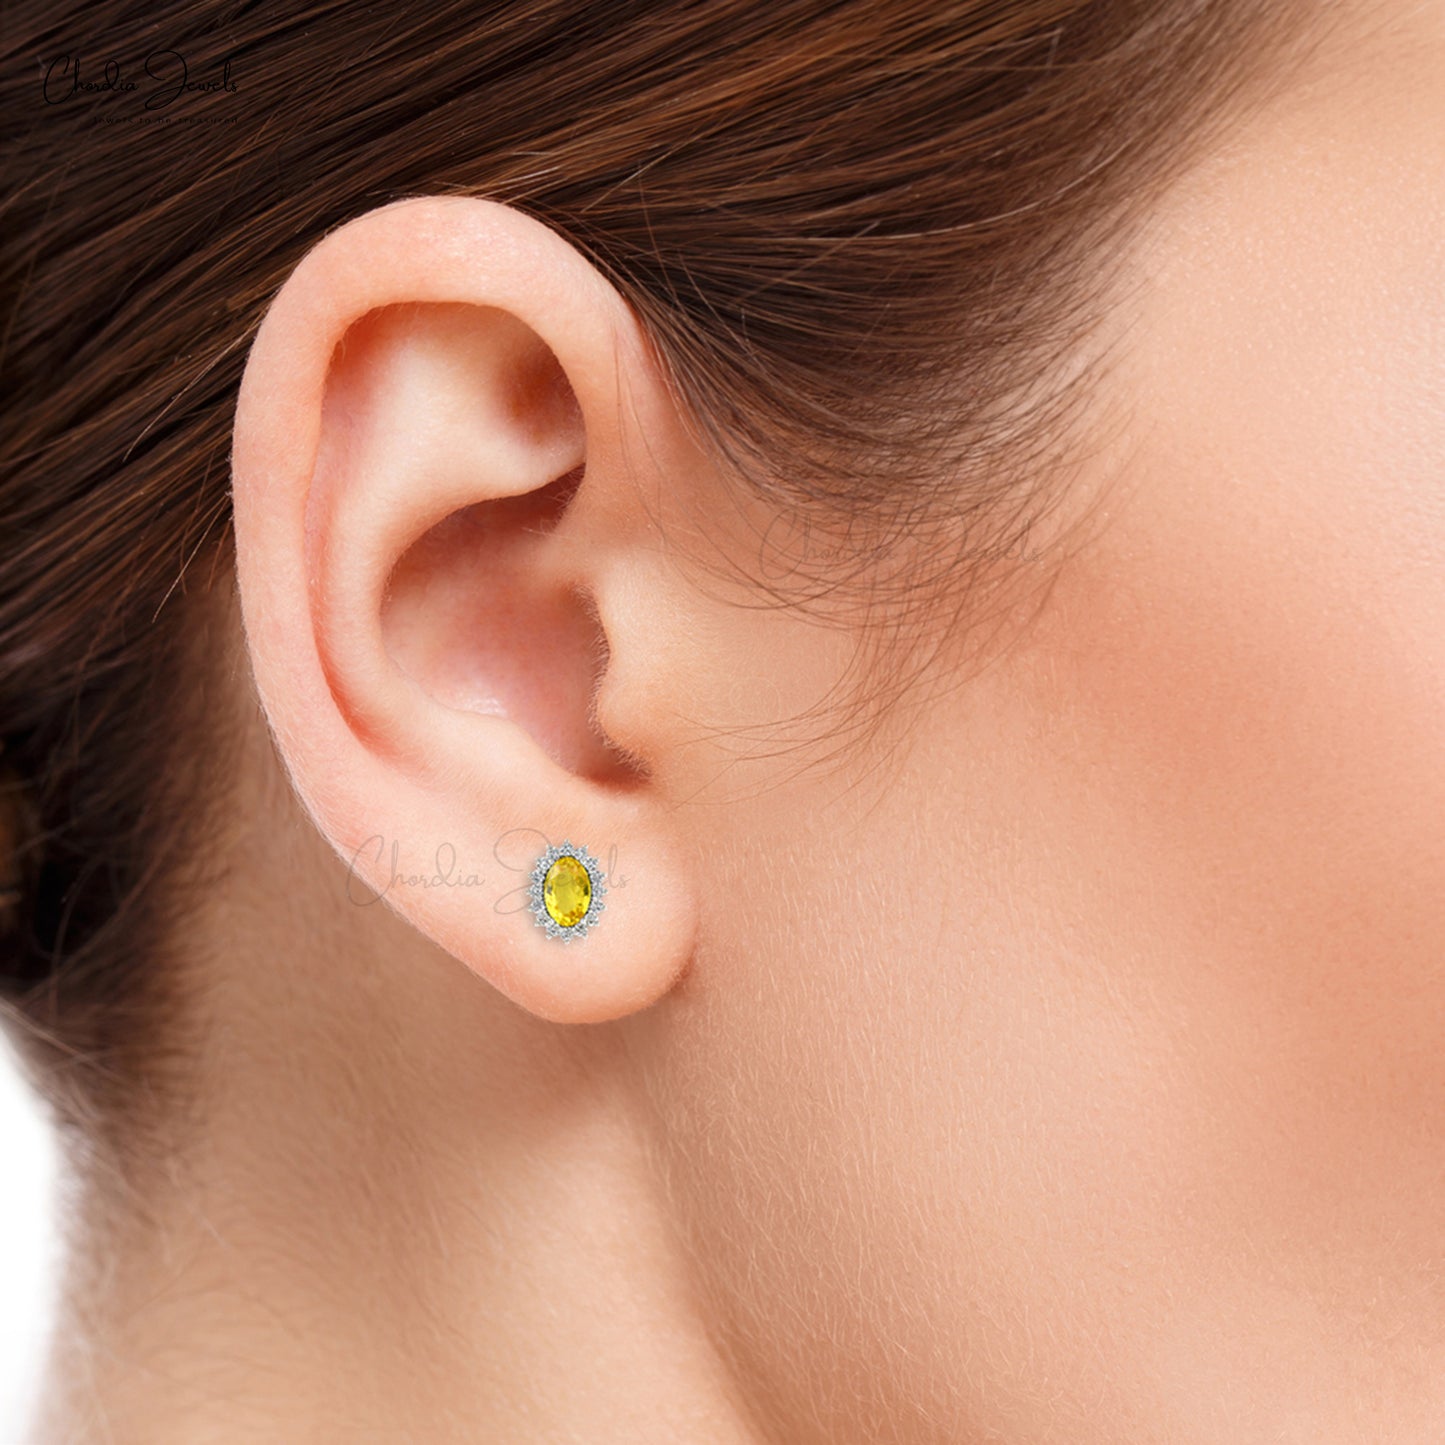 Buy Blue Sapphire Earrings for women 14K White Gold September Birthstone  earrings 1.50 carat tw at Amazon.in